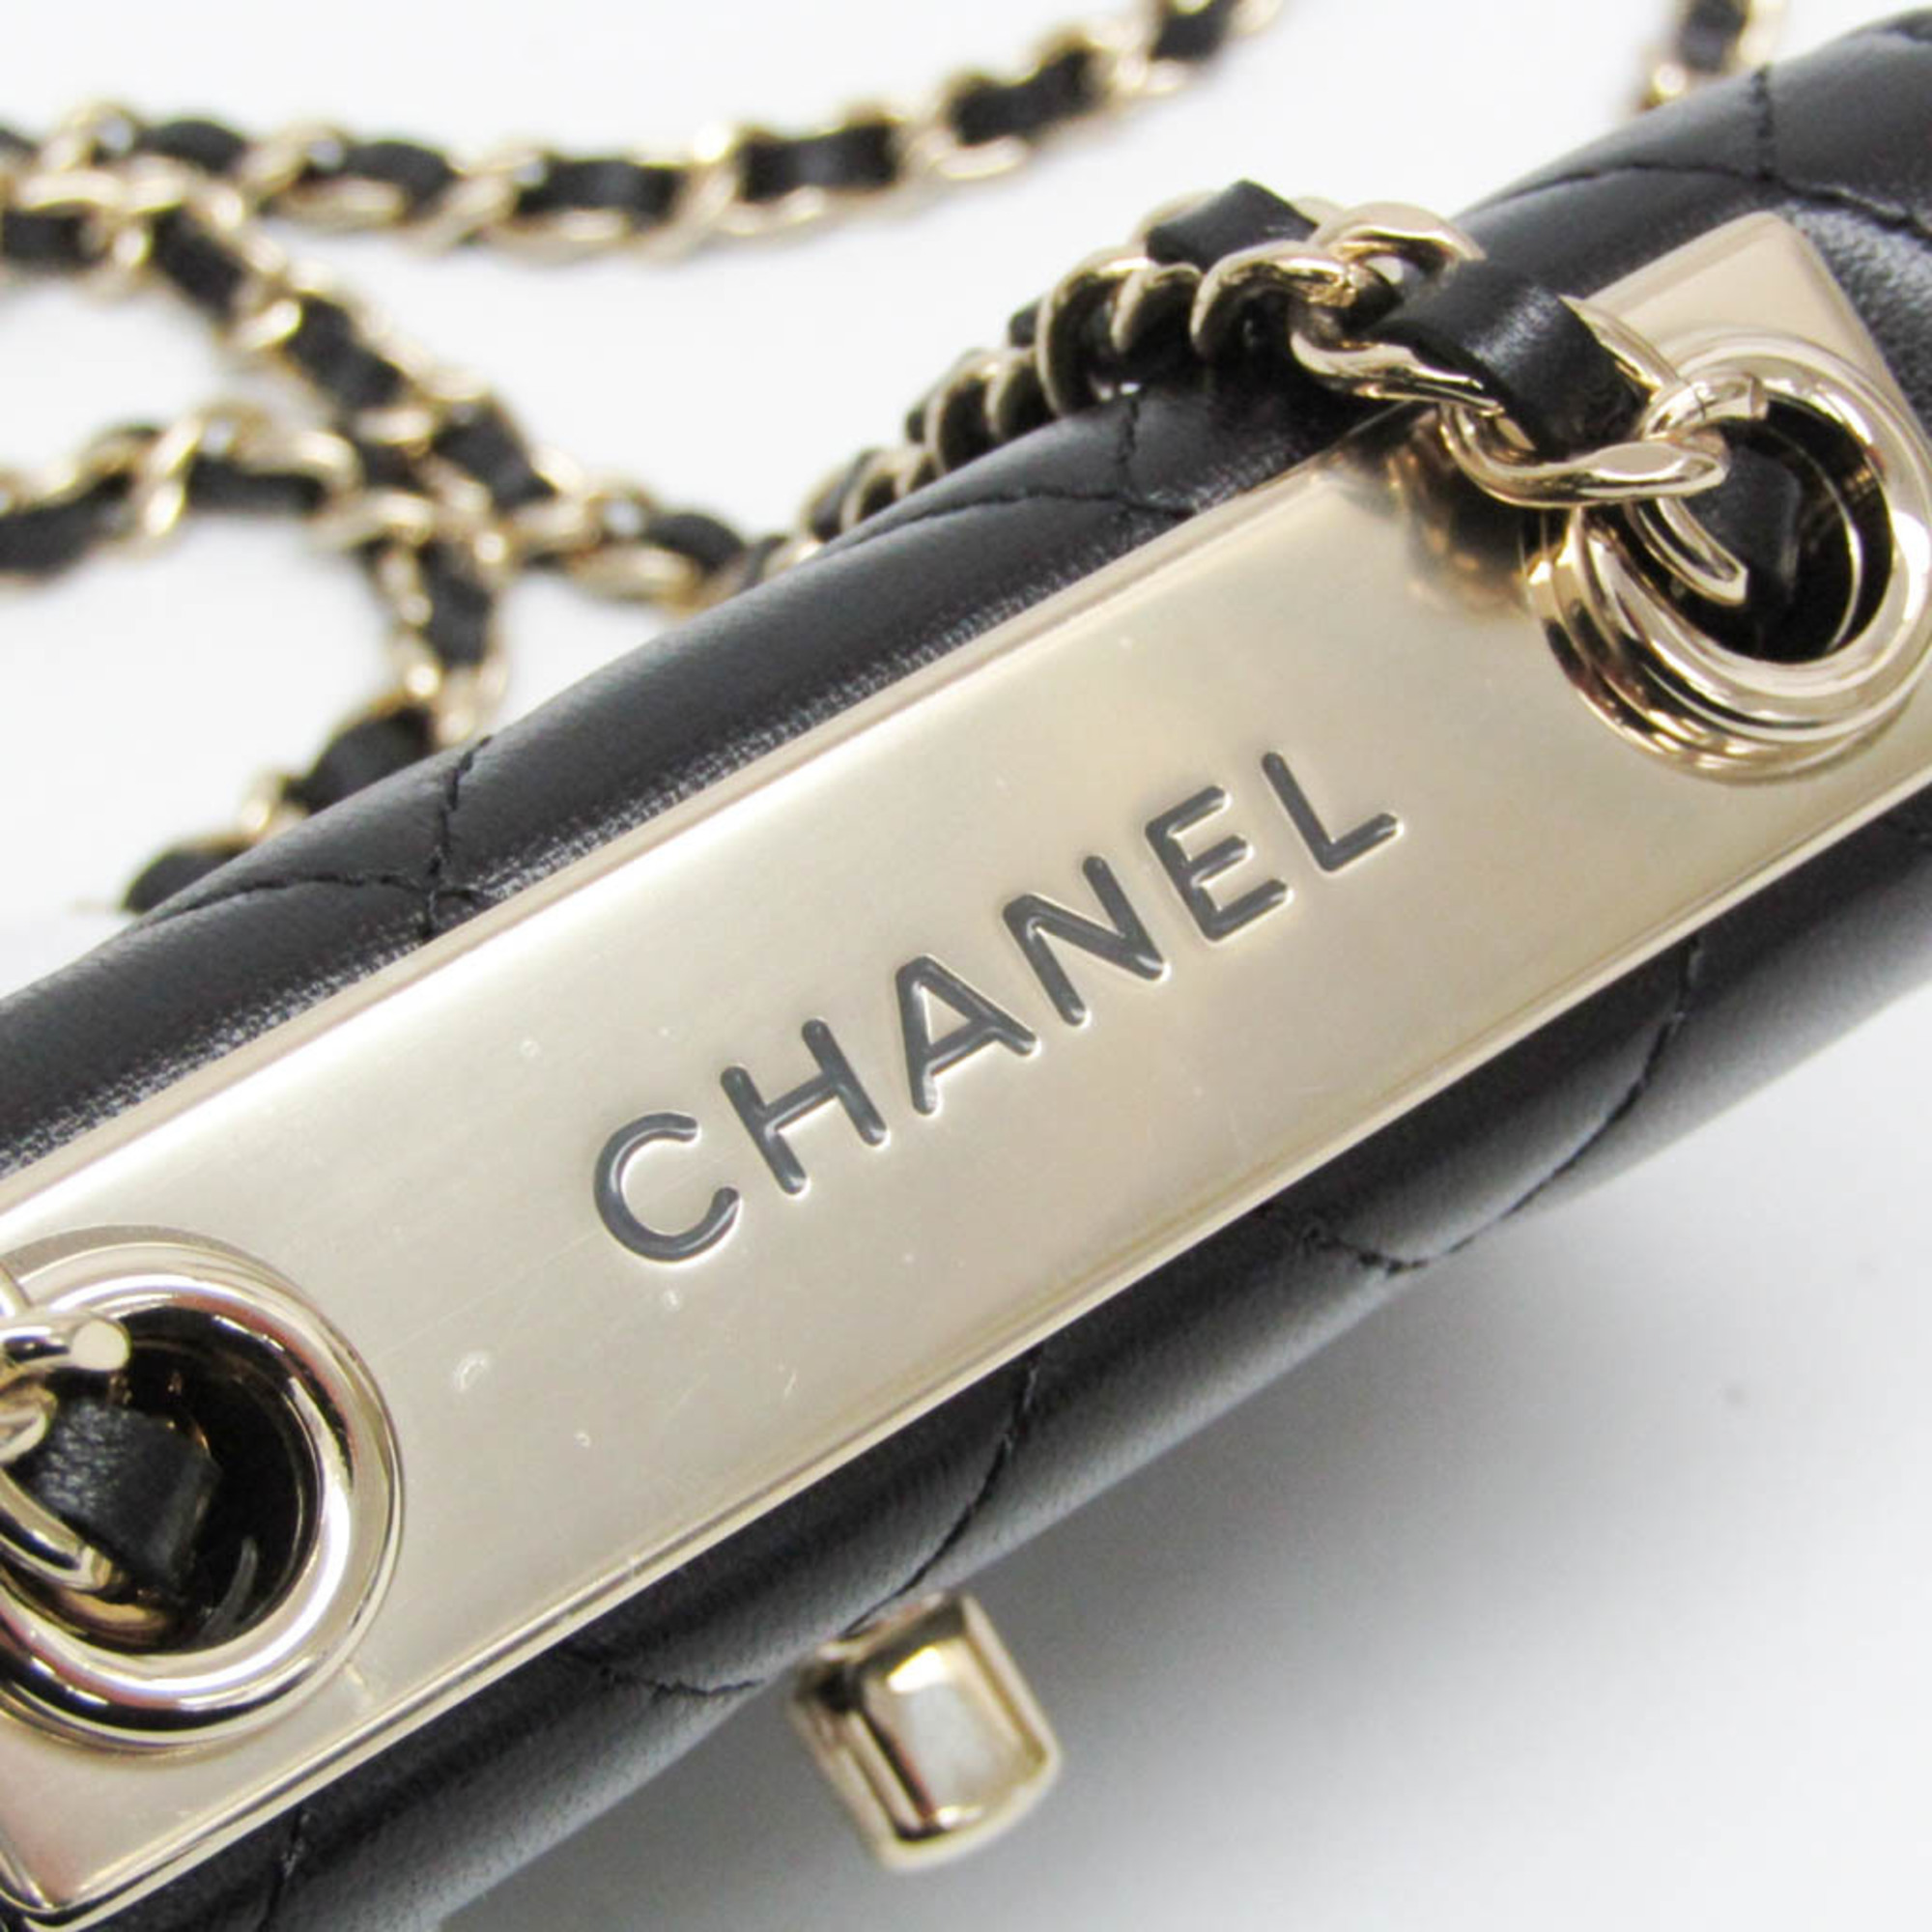 Chanel Matelasse Chain Shoulder Mini Bag Women's Leather Shoulder Bag Black